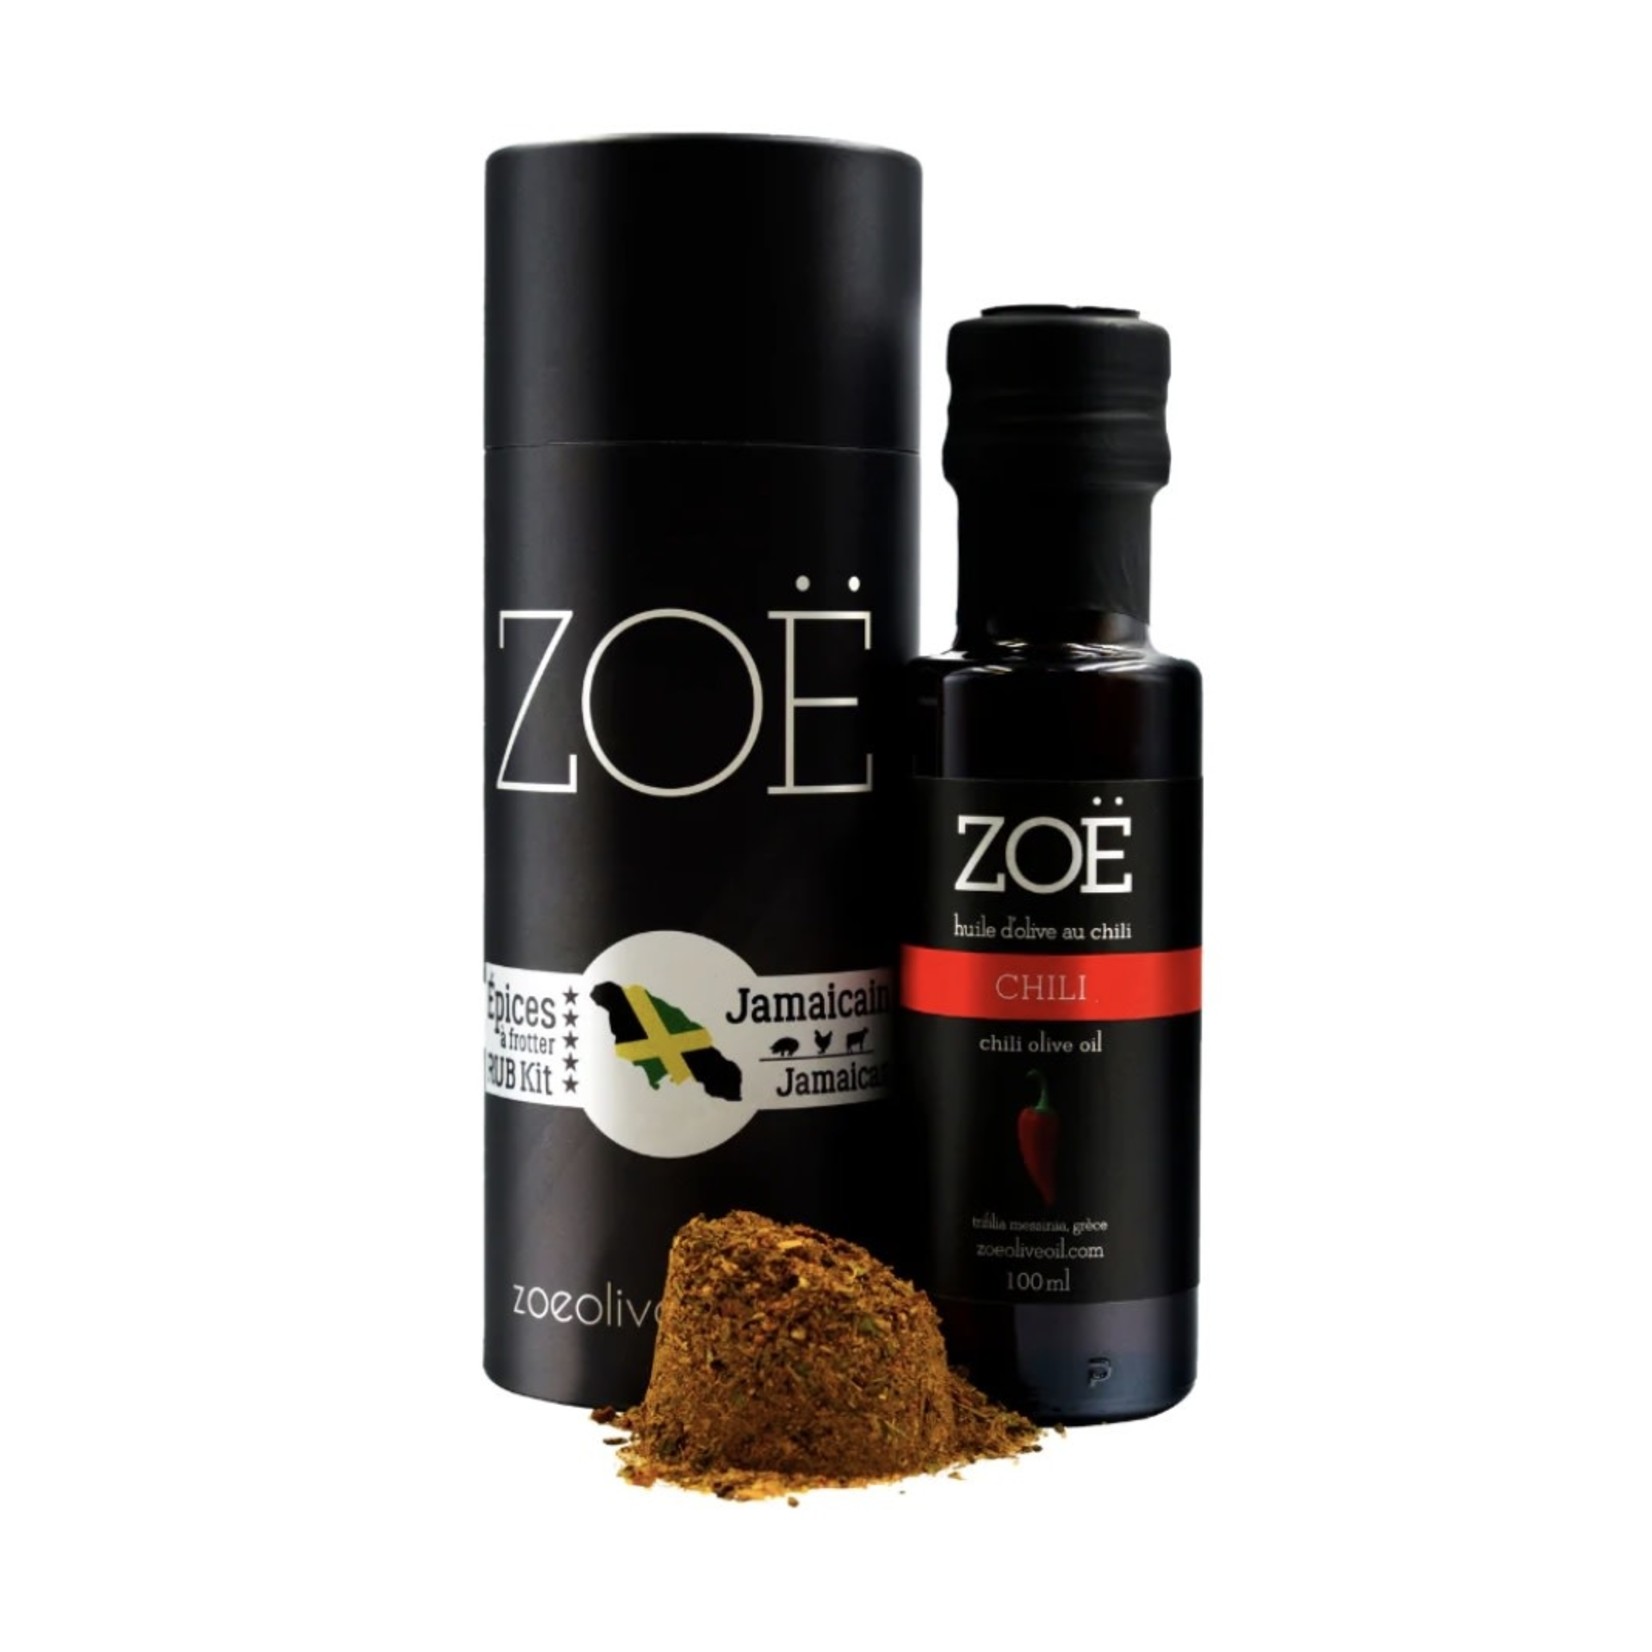 ZOE IMPORTS ZOE Rub Kit